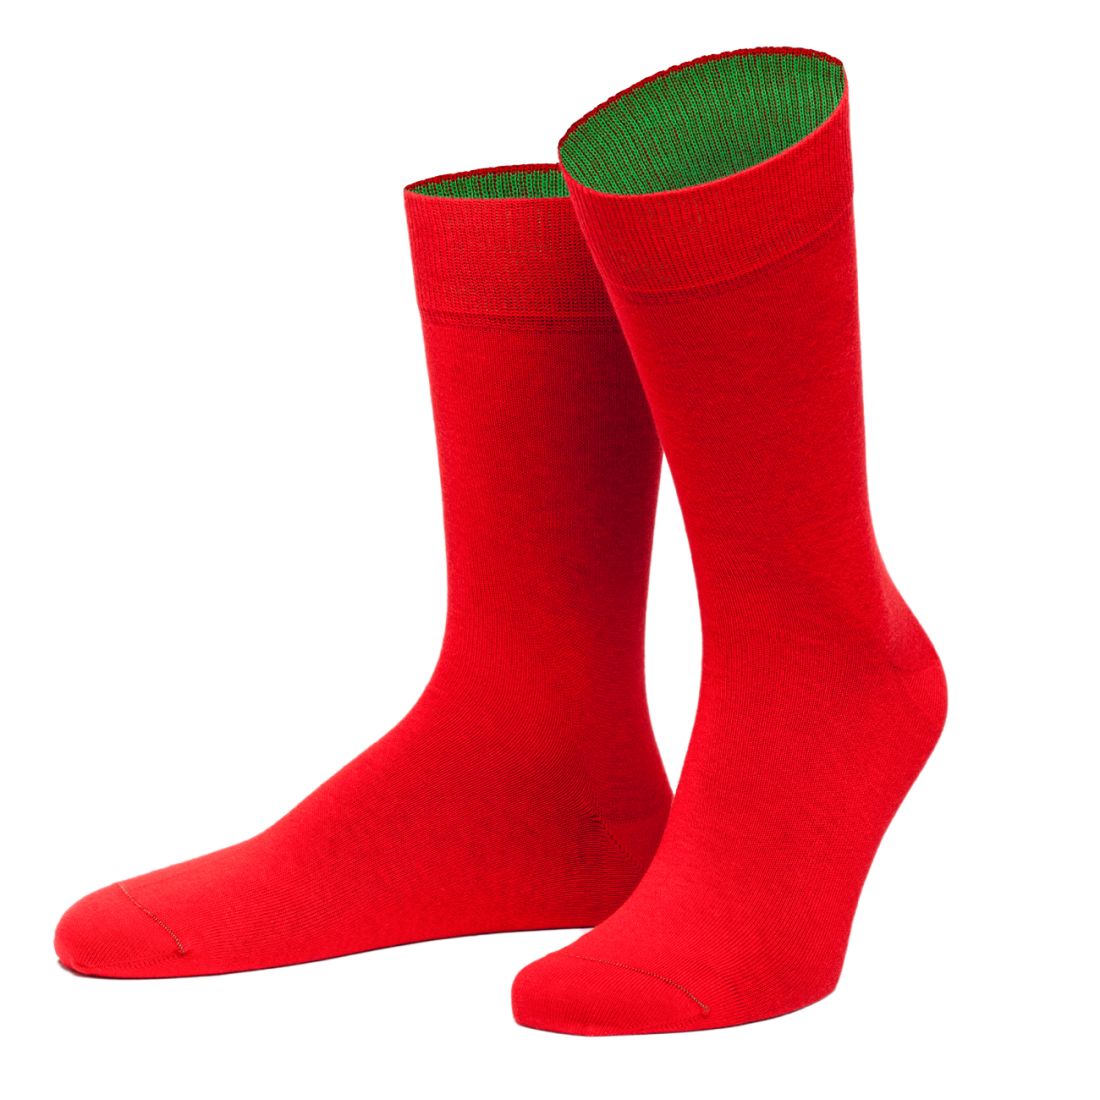 Chaussettes Navarra rouge et vert. Von Jungfield Von Jungfeld